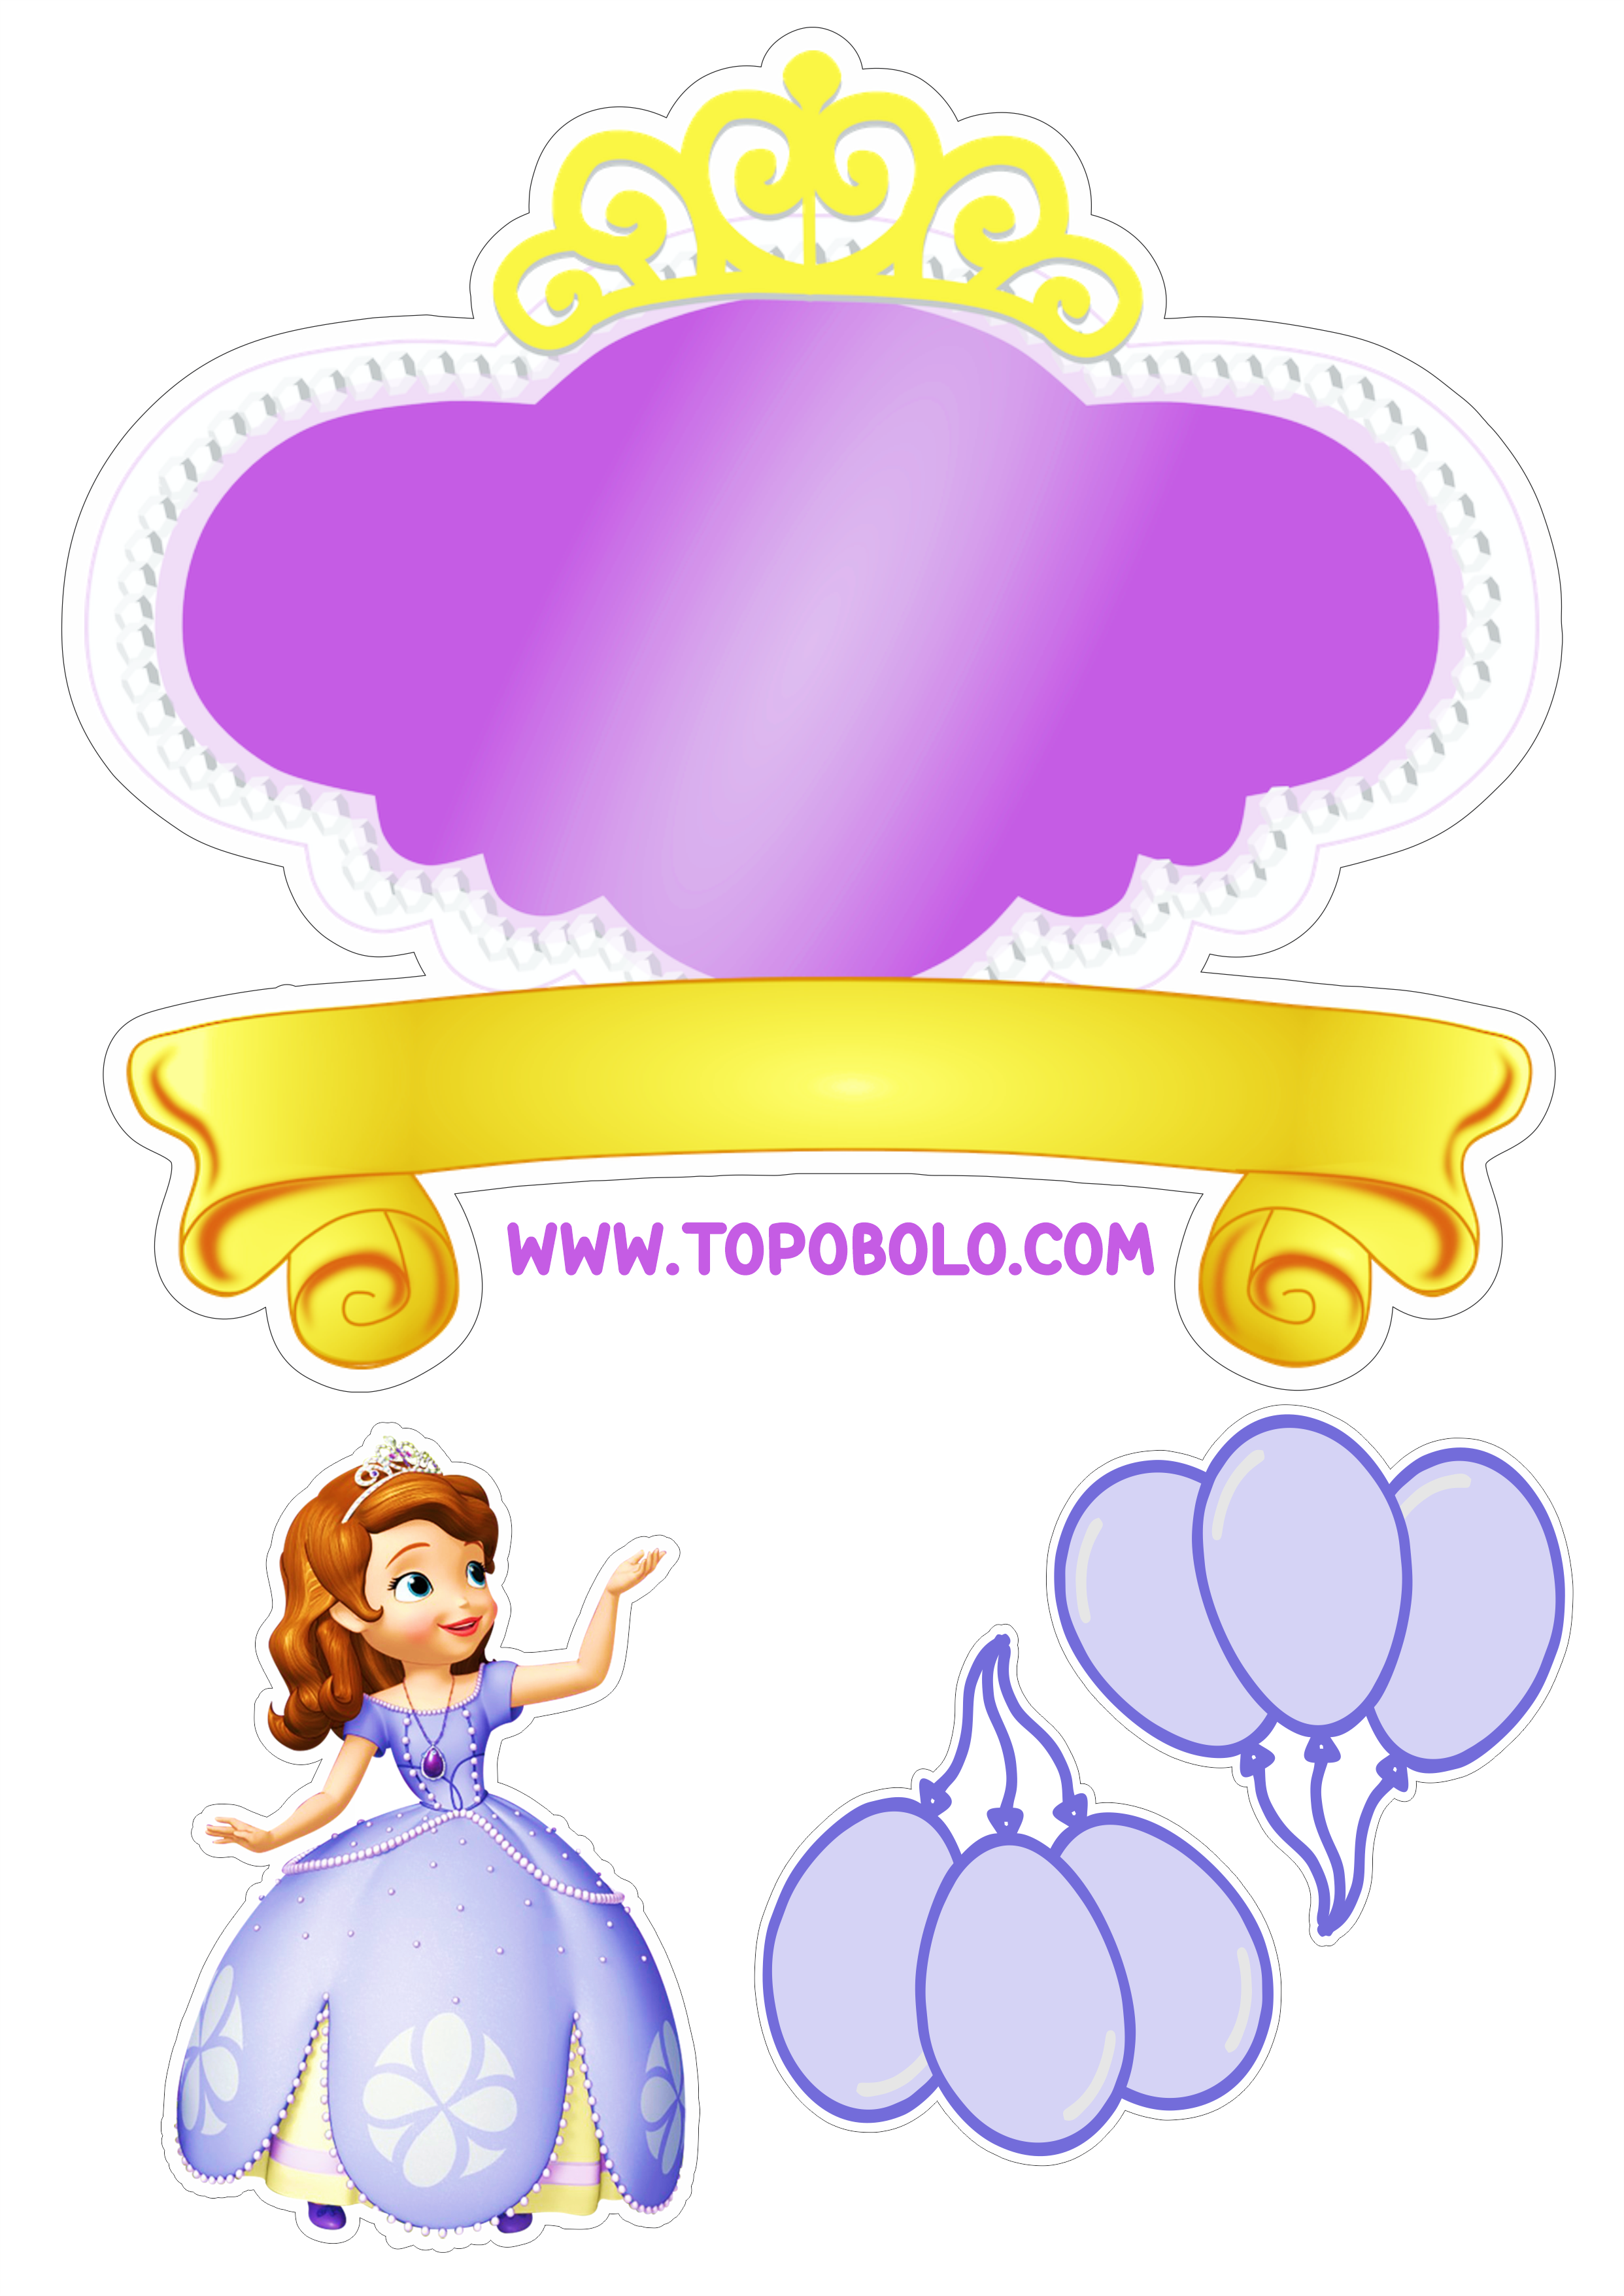 Topo de bolo grátis Princesinha Sofia festa de aniversário papelaria criativa personalizado renda extra com decoração download png